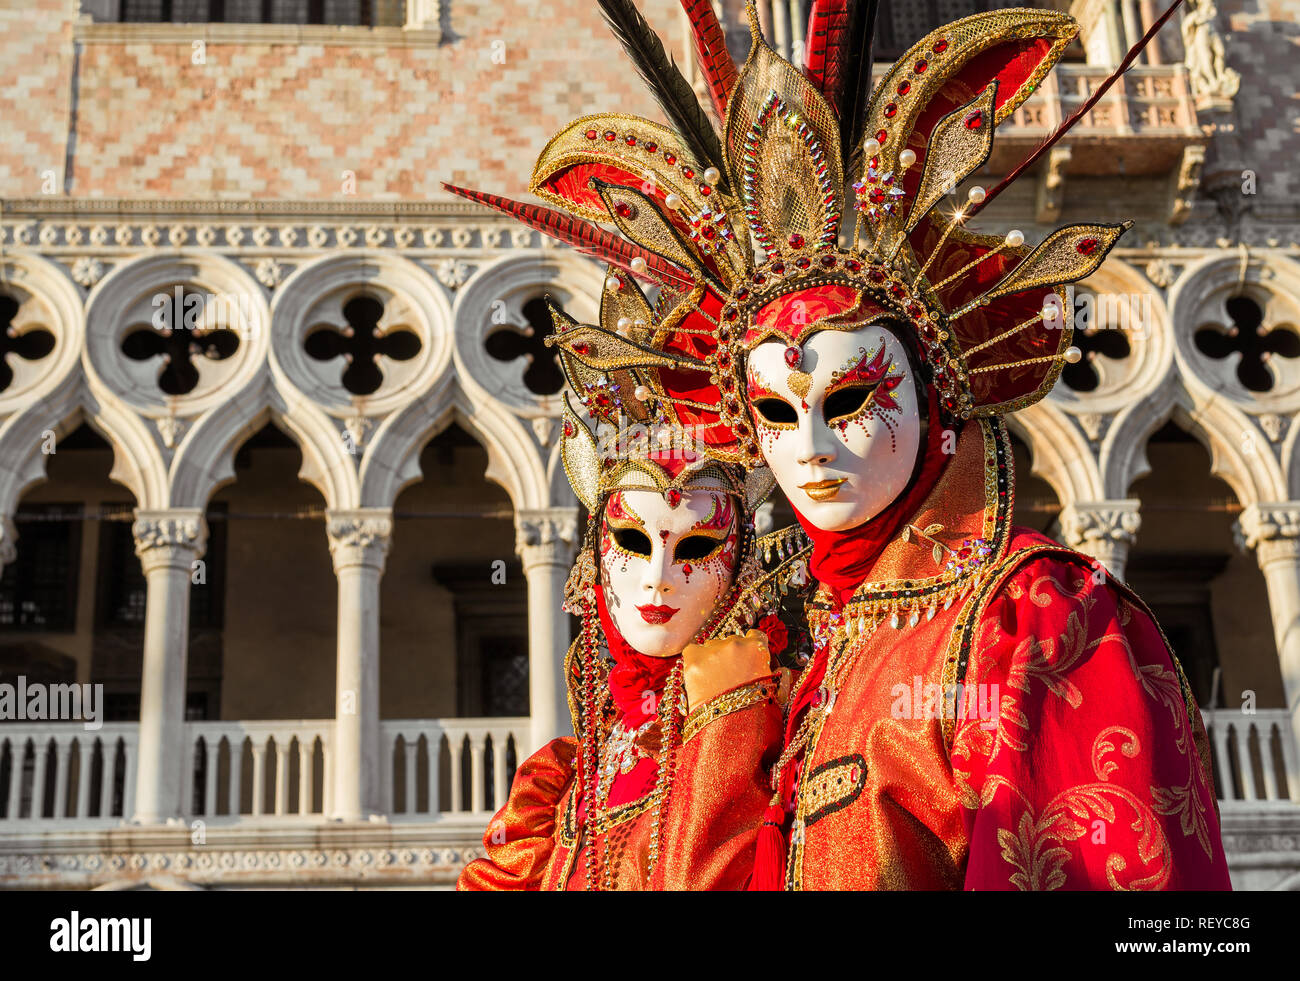 Karneval in Venedig. Zwei wunderschöne venezianische Karnevalsmasken mit dem berühmten Doge Palast im Hintergrund Stockfoto